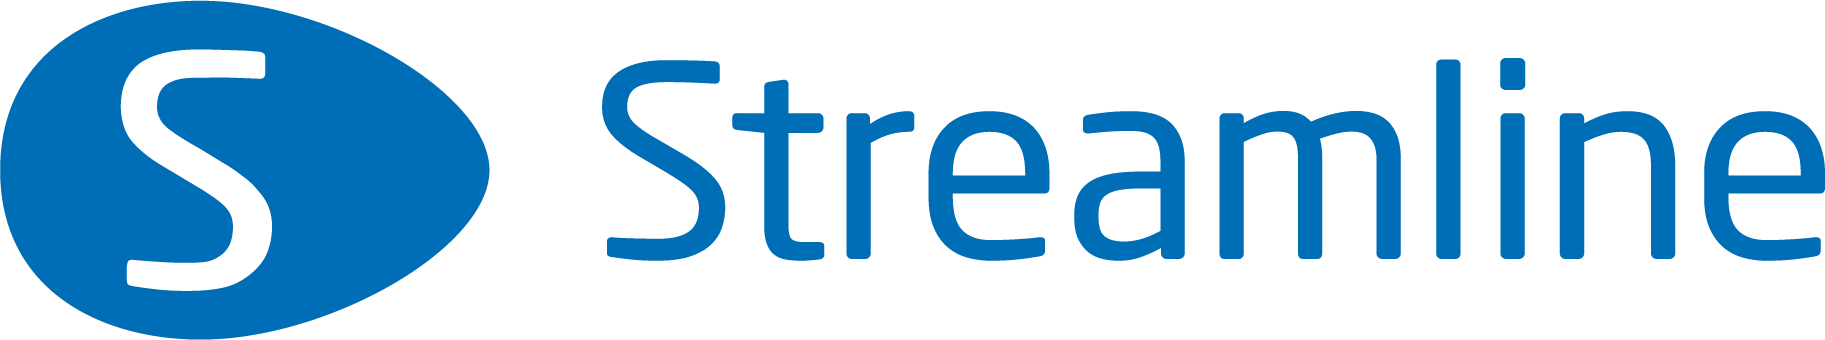 Streamline логотип синій